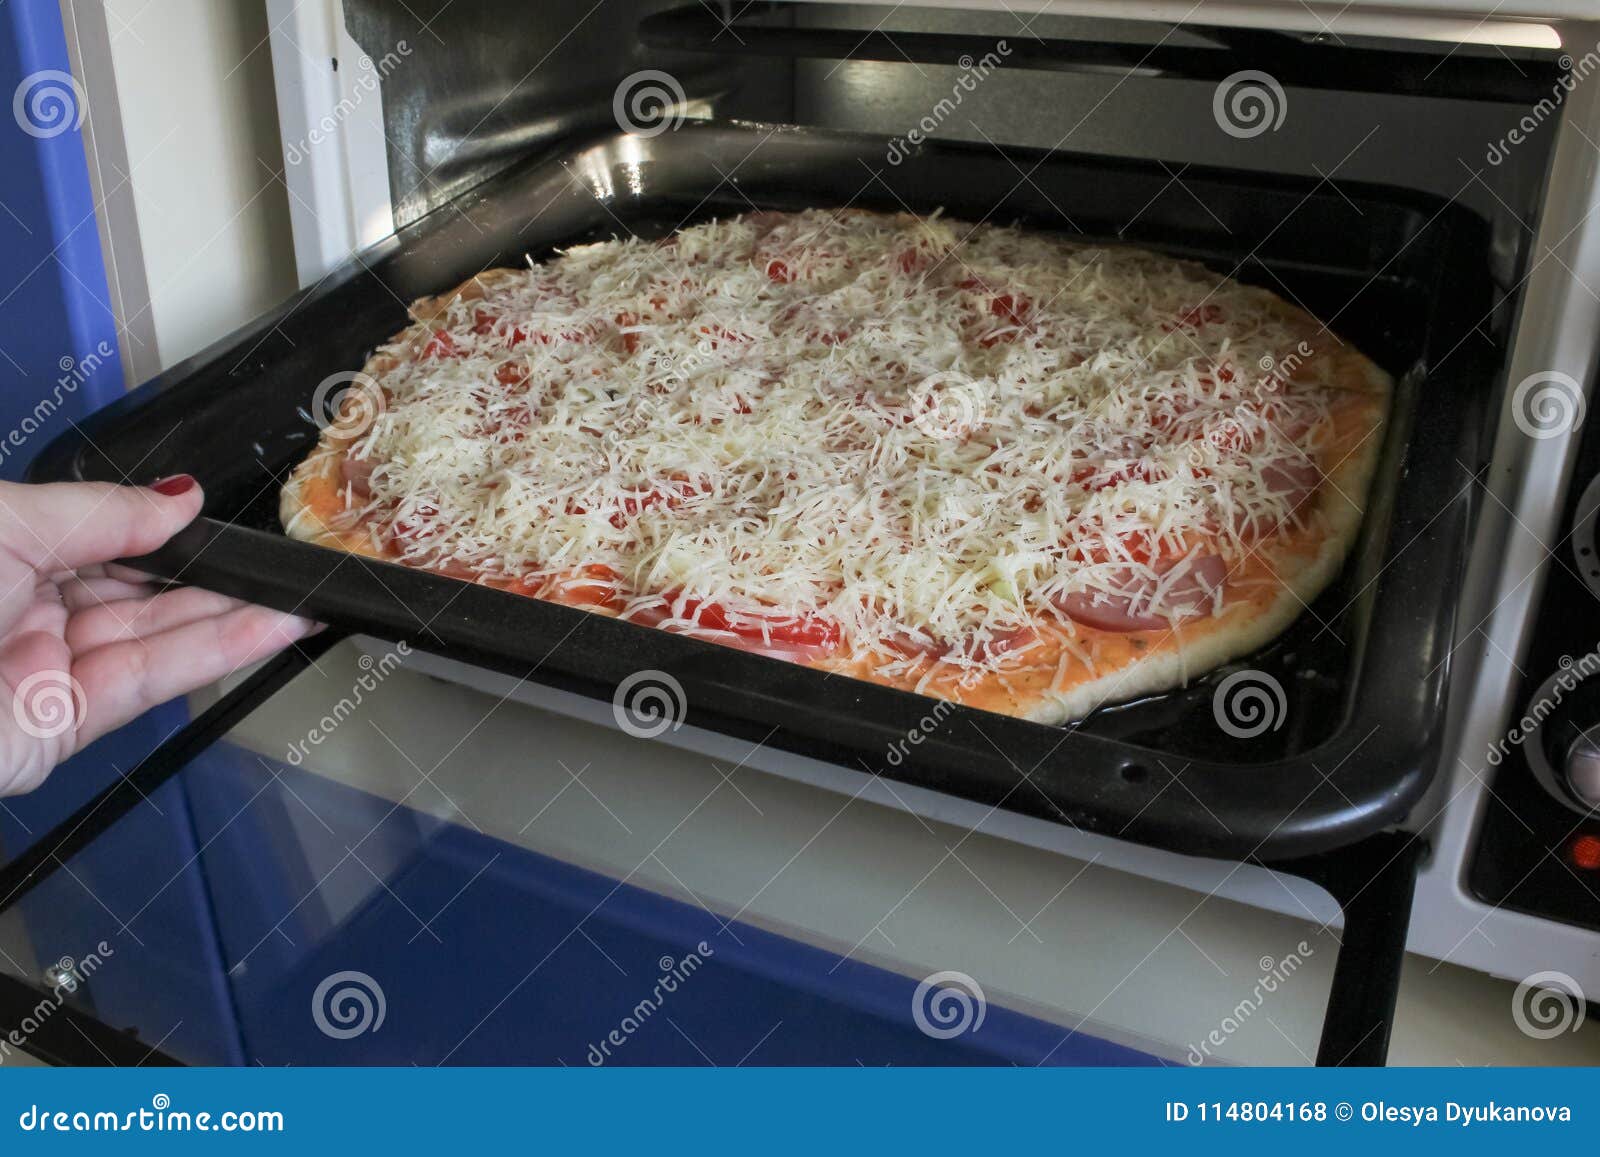 бумага для пиццы в духовке фото 3